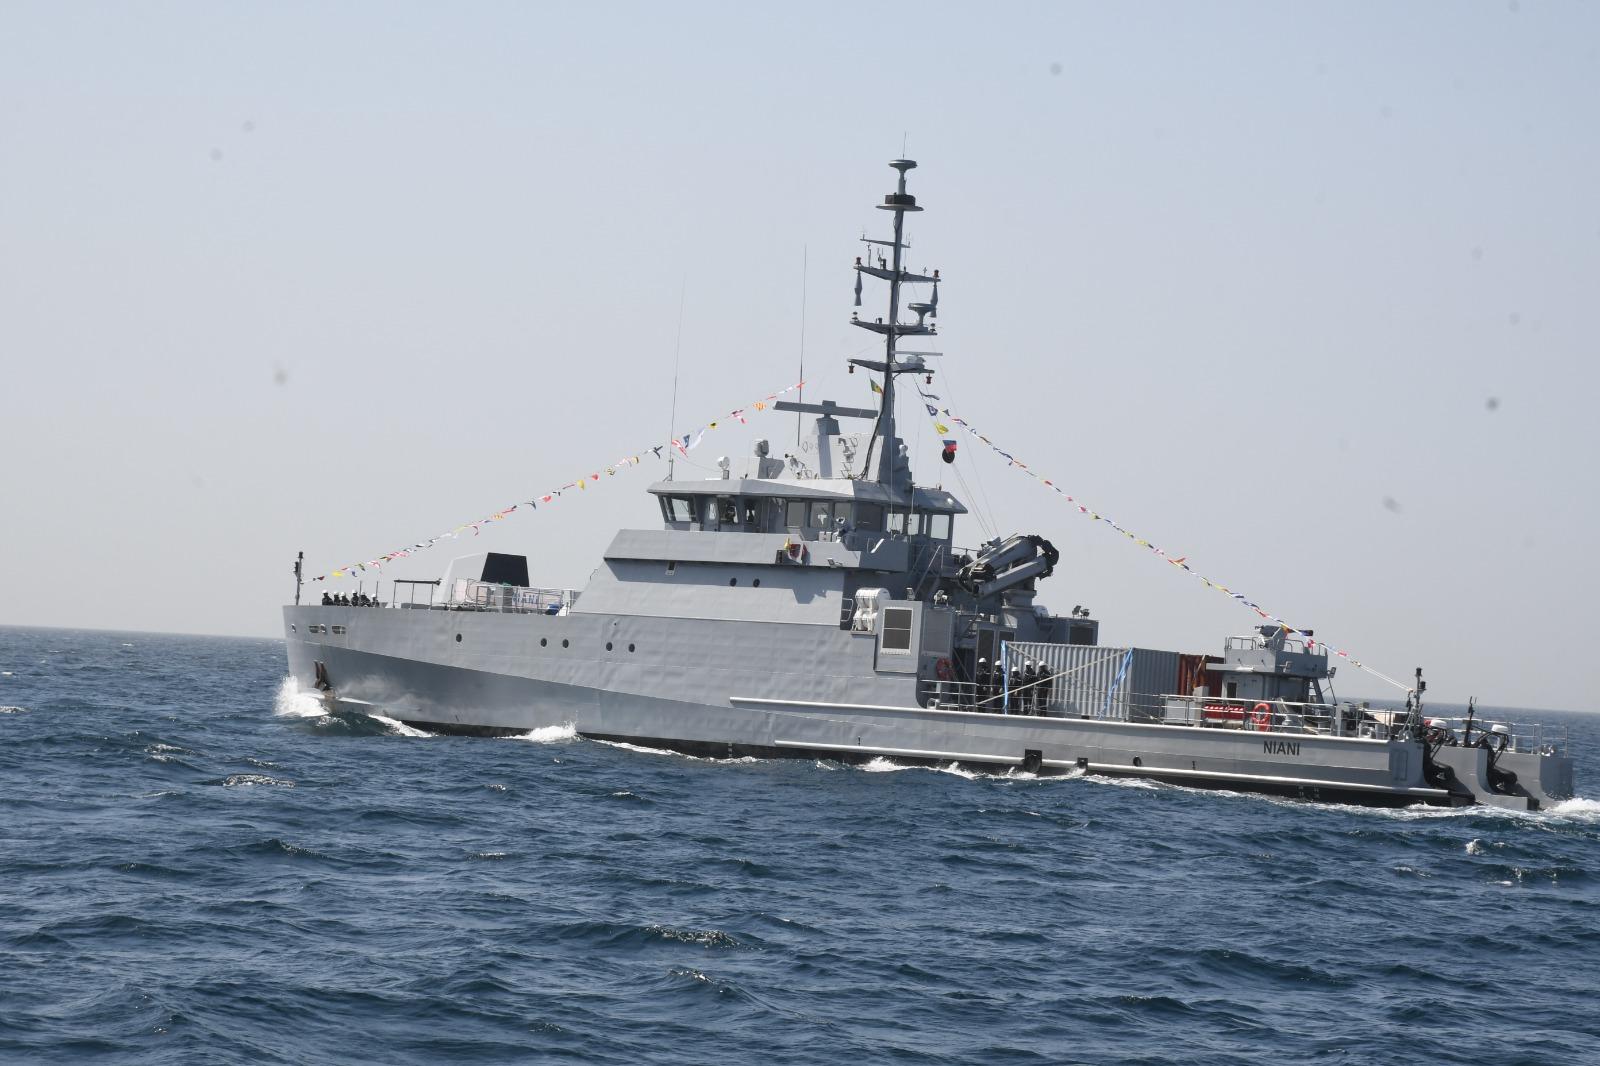 Cinq éléments de la marine sénégalaise manquent à l’appel après une intervention contre un navire soupçonné de transporter de la drogue